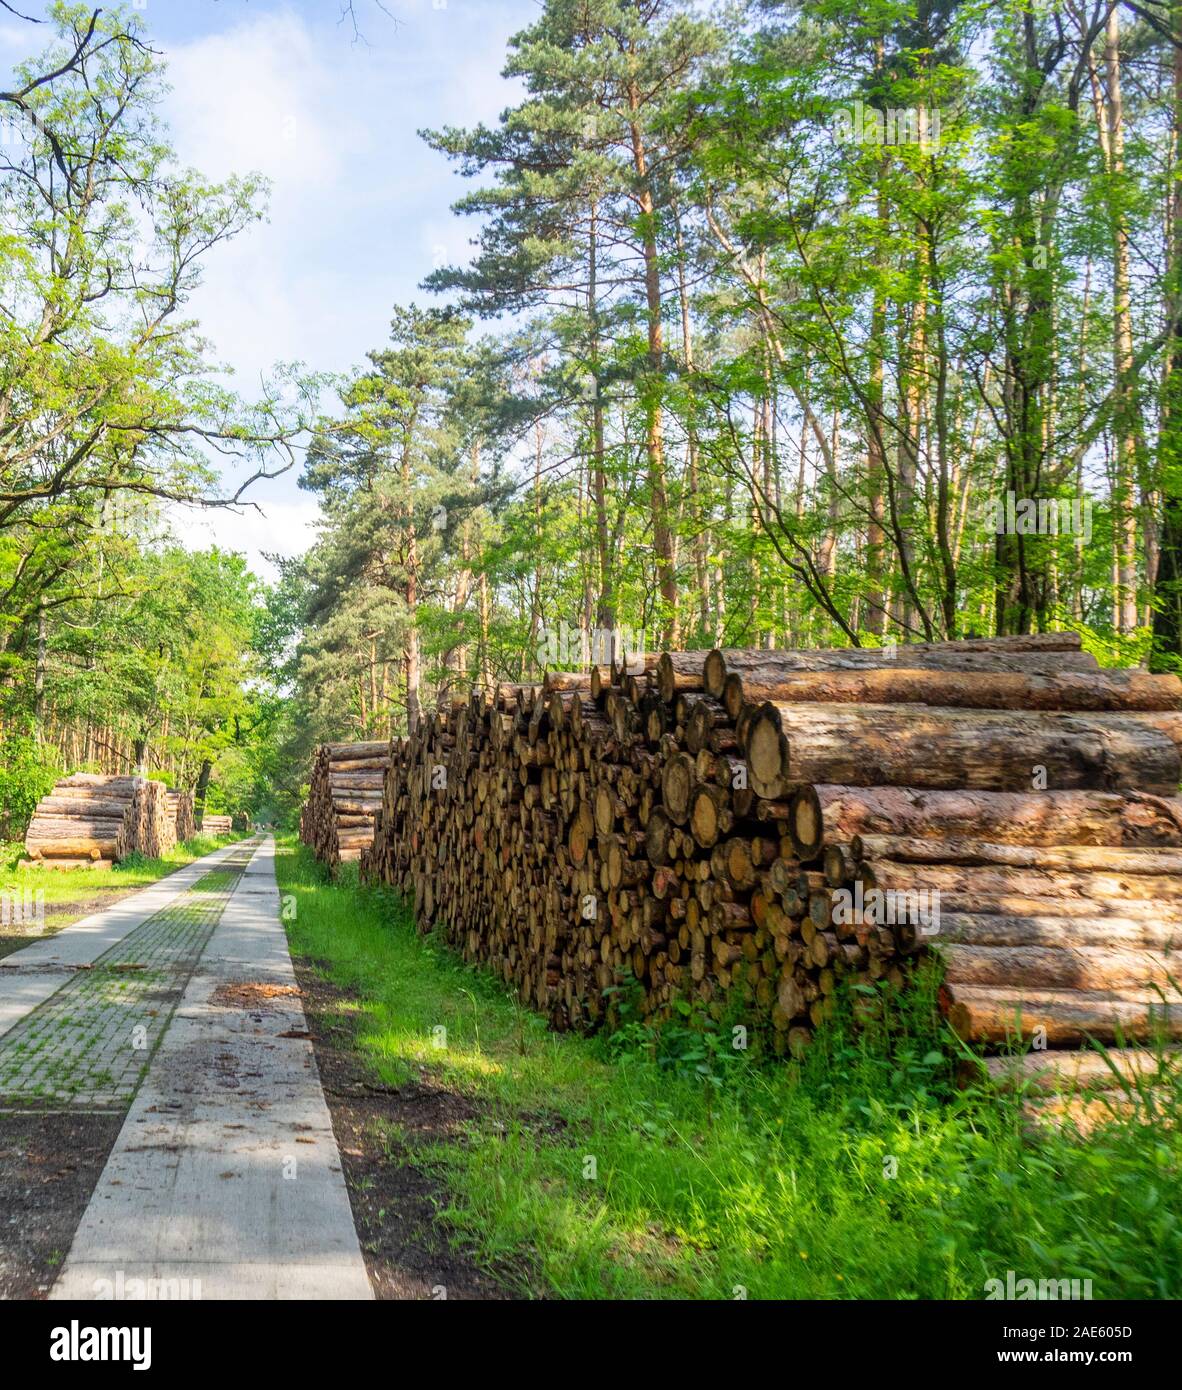 Holzwirtschaft stapelte Holzstämme neben der Straße Badetzer Weg im Steckby-Lödderitzer Wald Sachsen-Anhalt Deutschland. Stockfoto